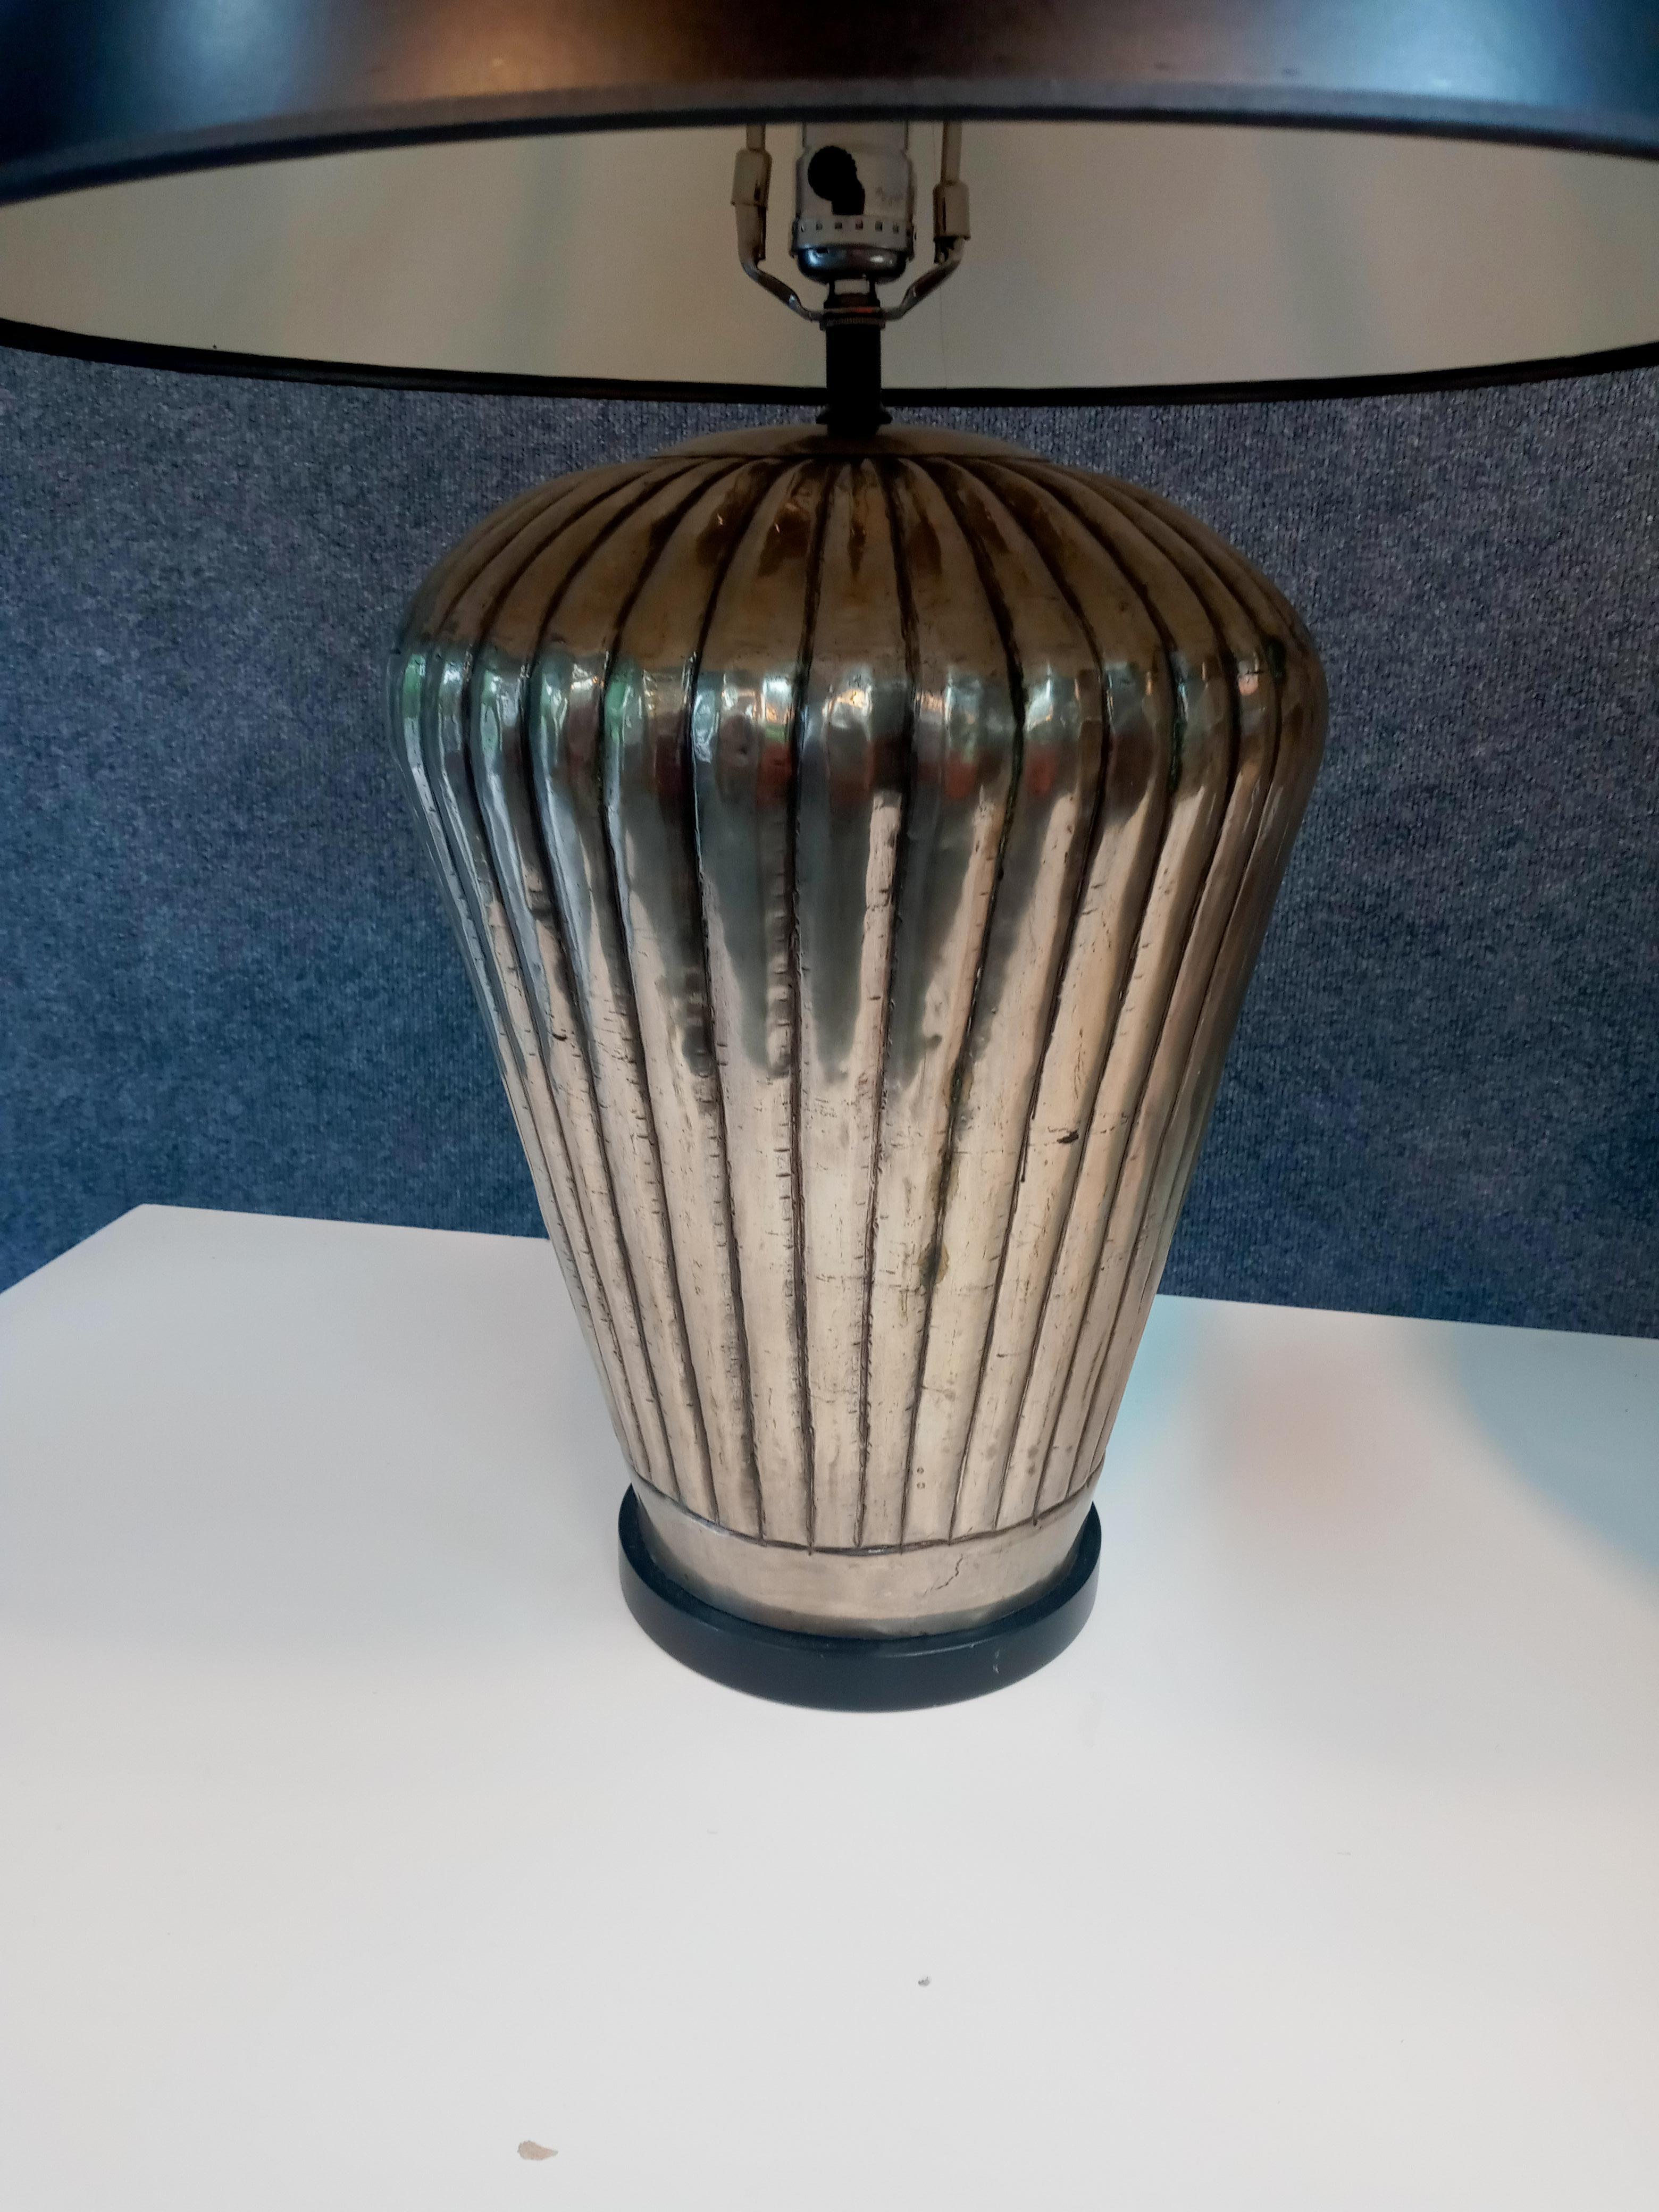 Mid-Century Modern Style of J Robert Scott Pair of Stylish Table Lamps Mid-Century Post-Modern Era